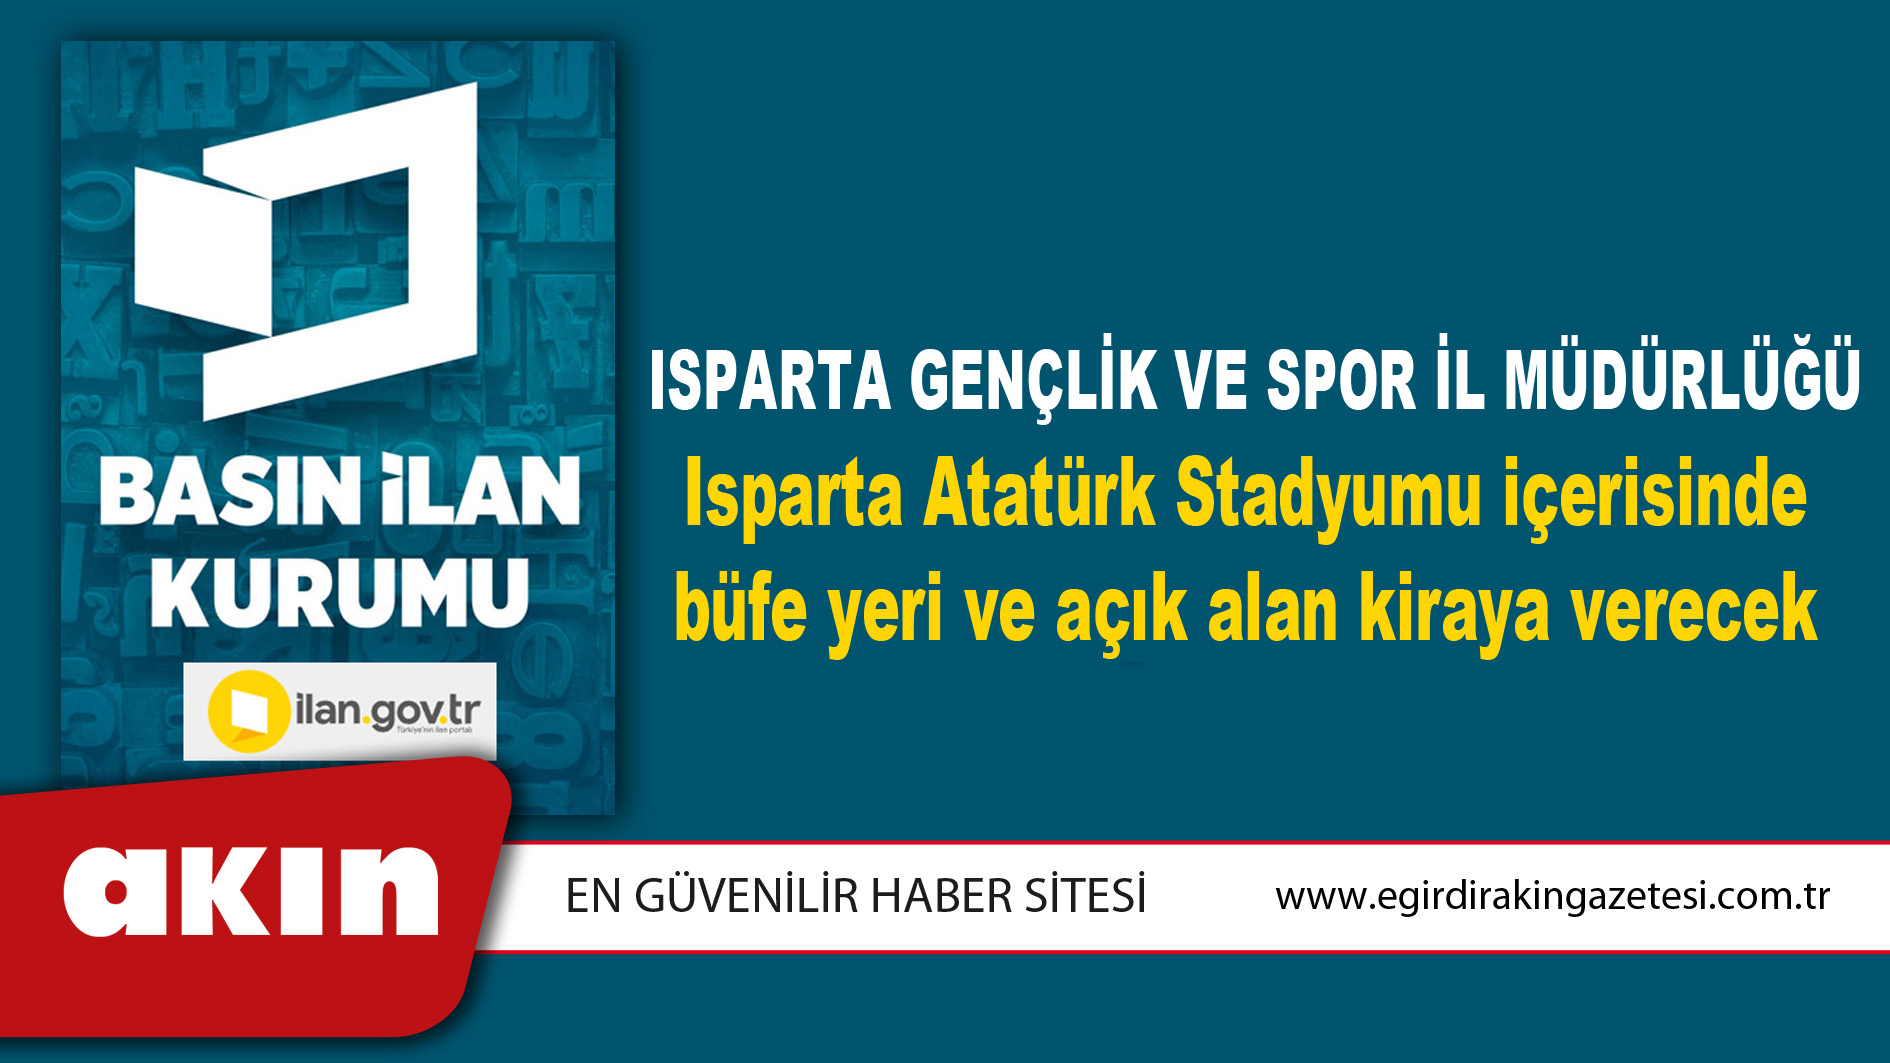 eğirdir haber,akın gazetesi,egirdir haberler,son dakika,Isparta Gençlik Ve Spor İl Müdürlüğü Isparta Atatürk Stadyumu içerisinde büfe yeri ve açık alan kiraya verecek